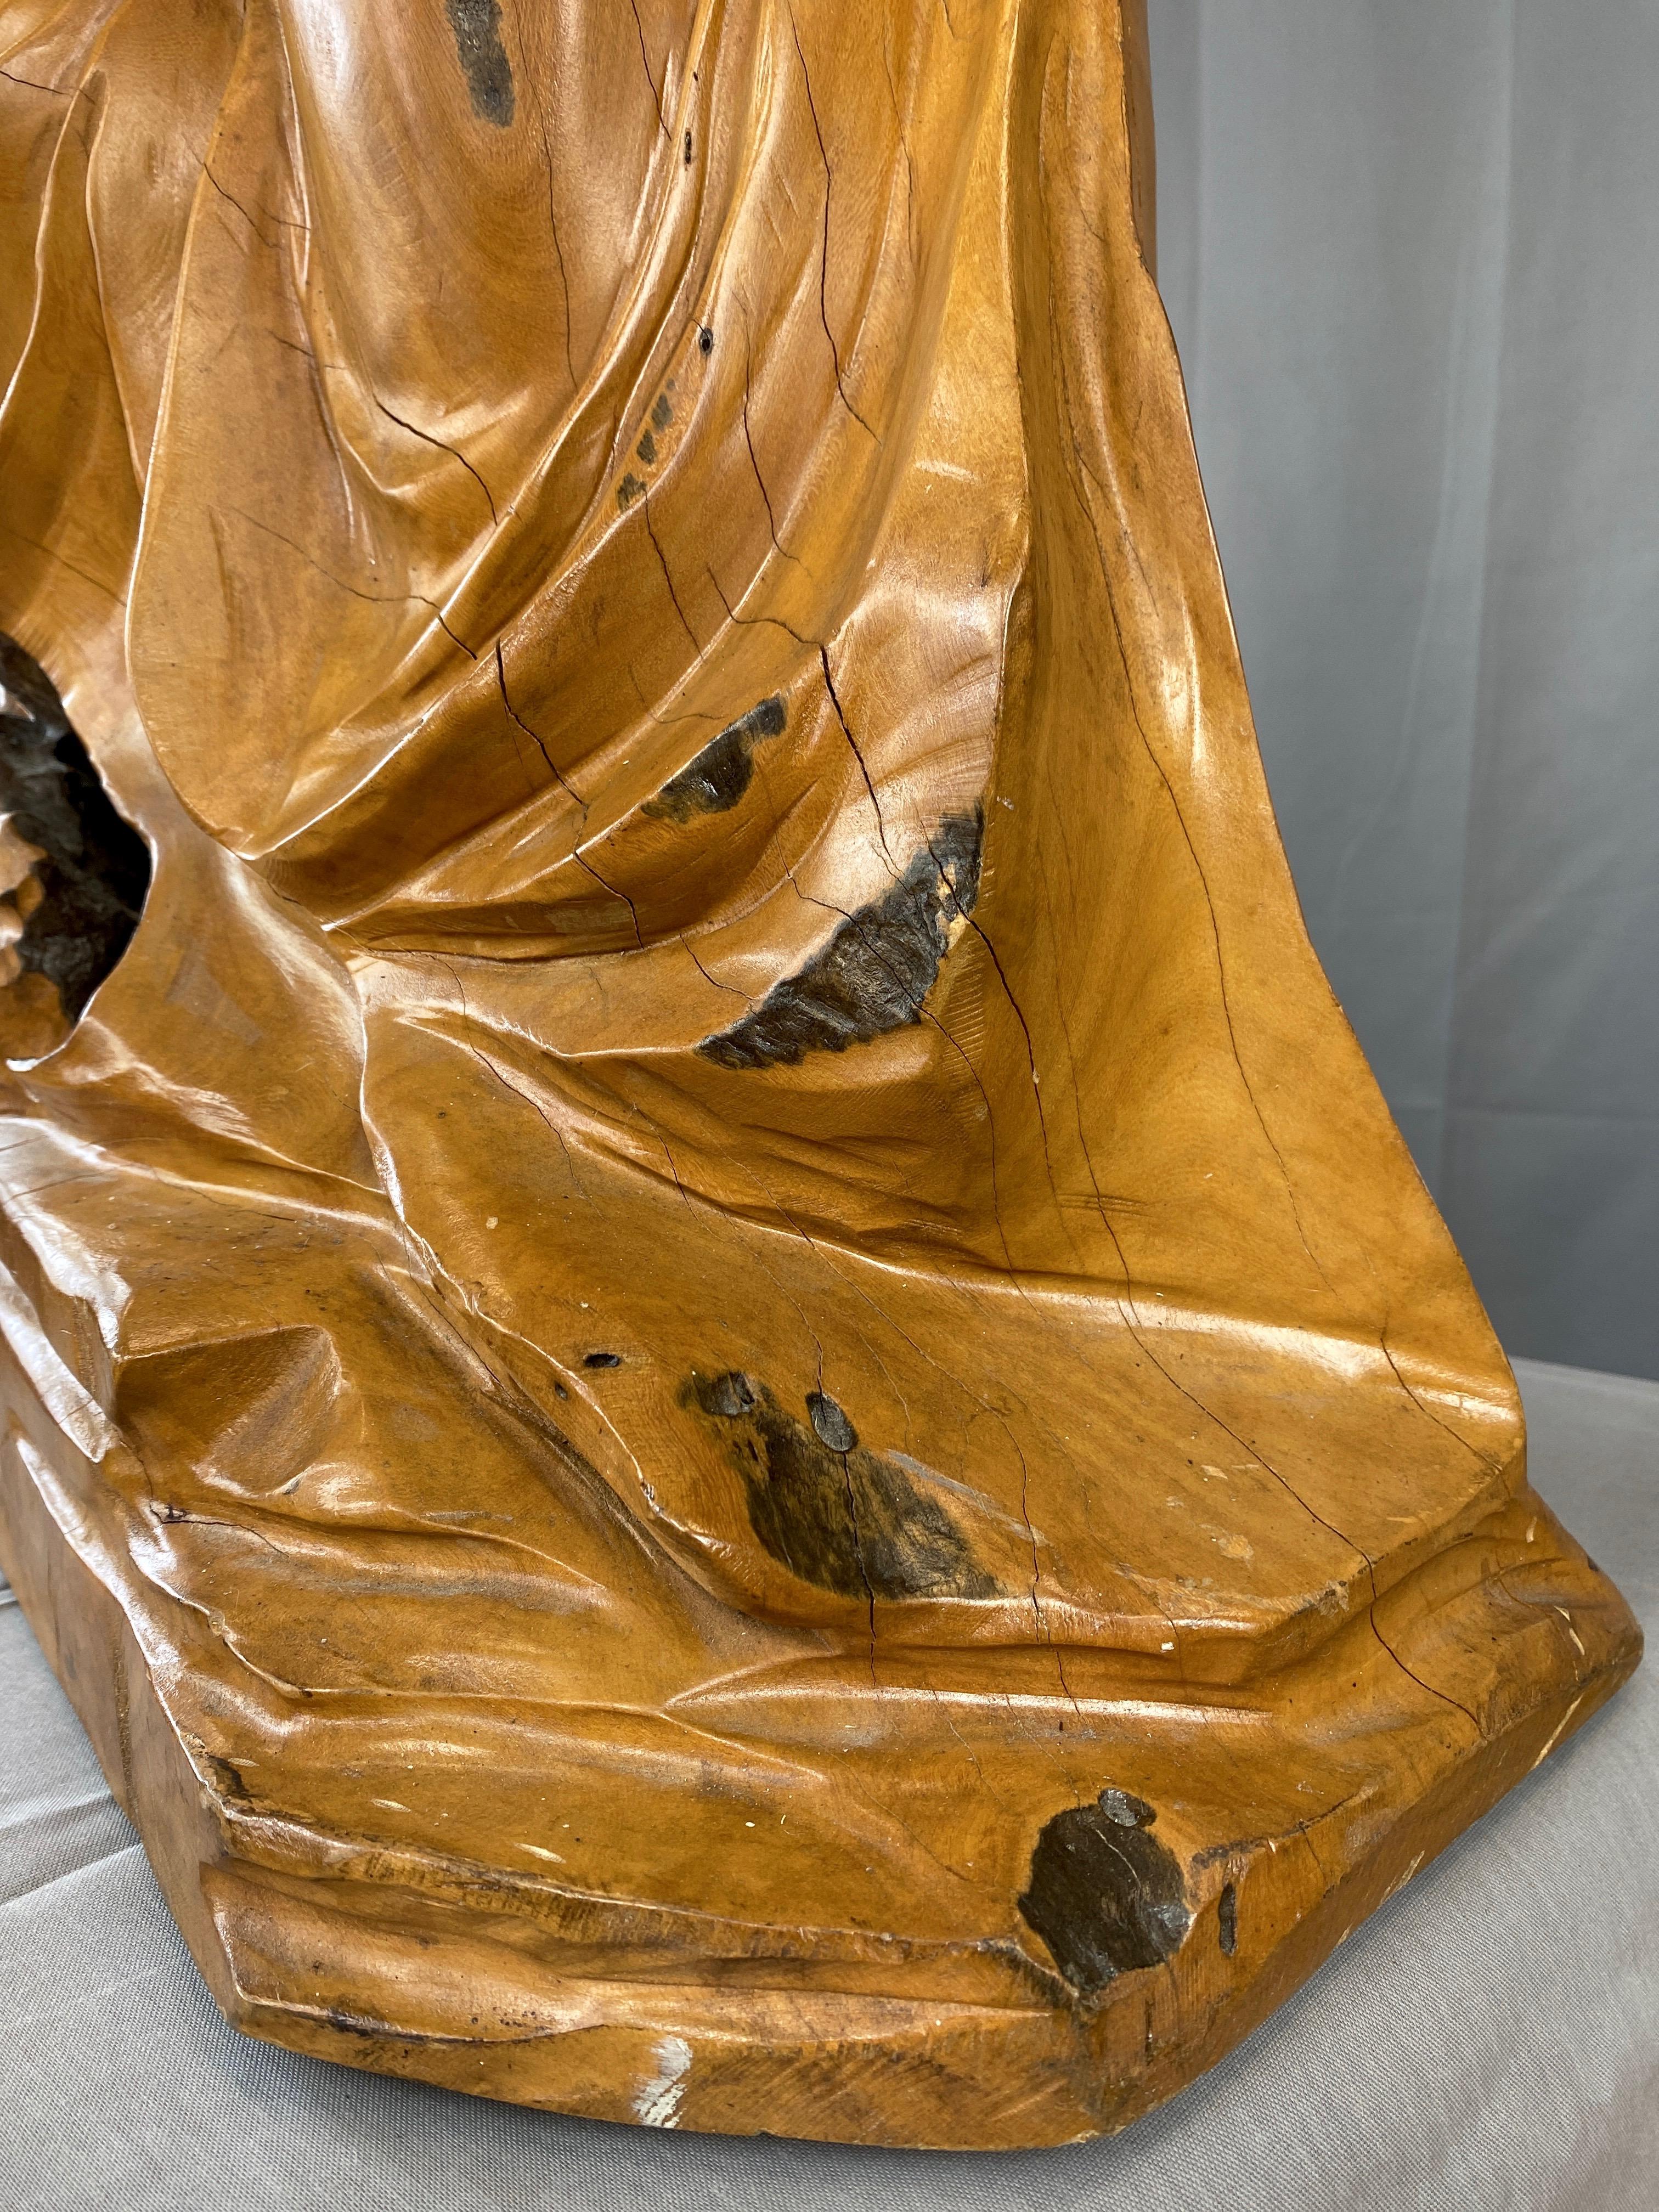 Large Hand-Carved Cypress Knee Figural Sculpture After Botticelli's Venus, 1970s For Sale 6